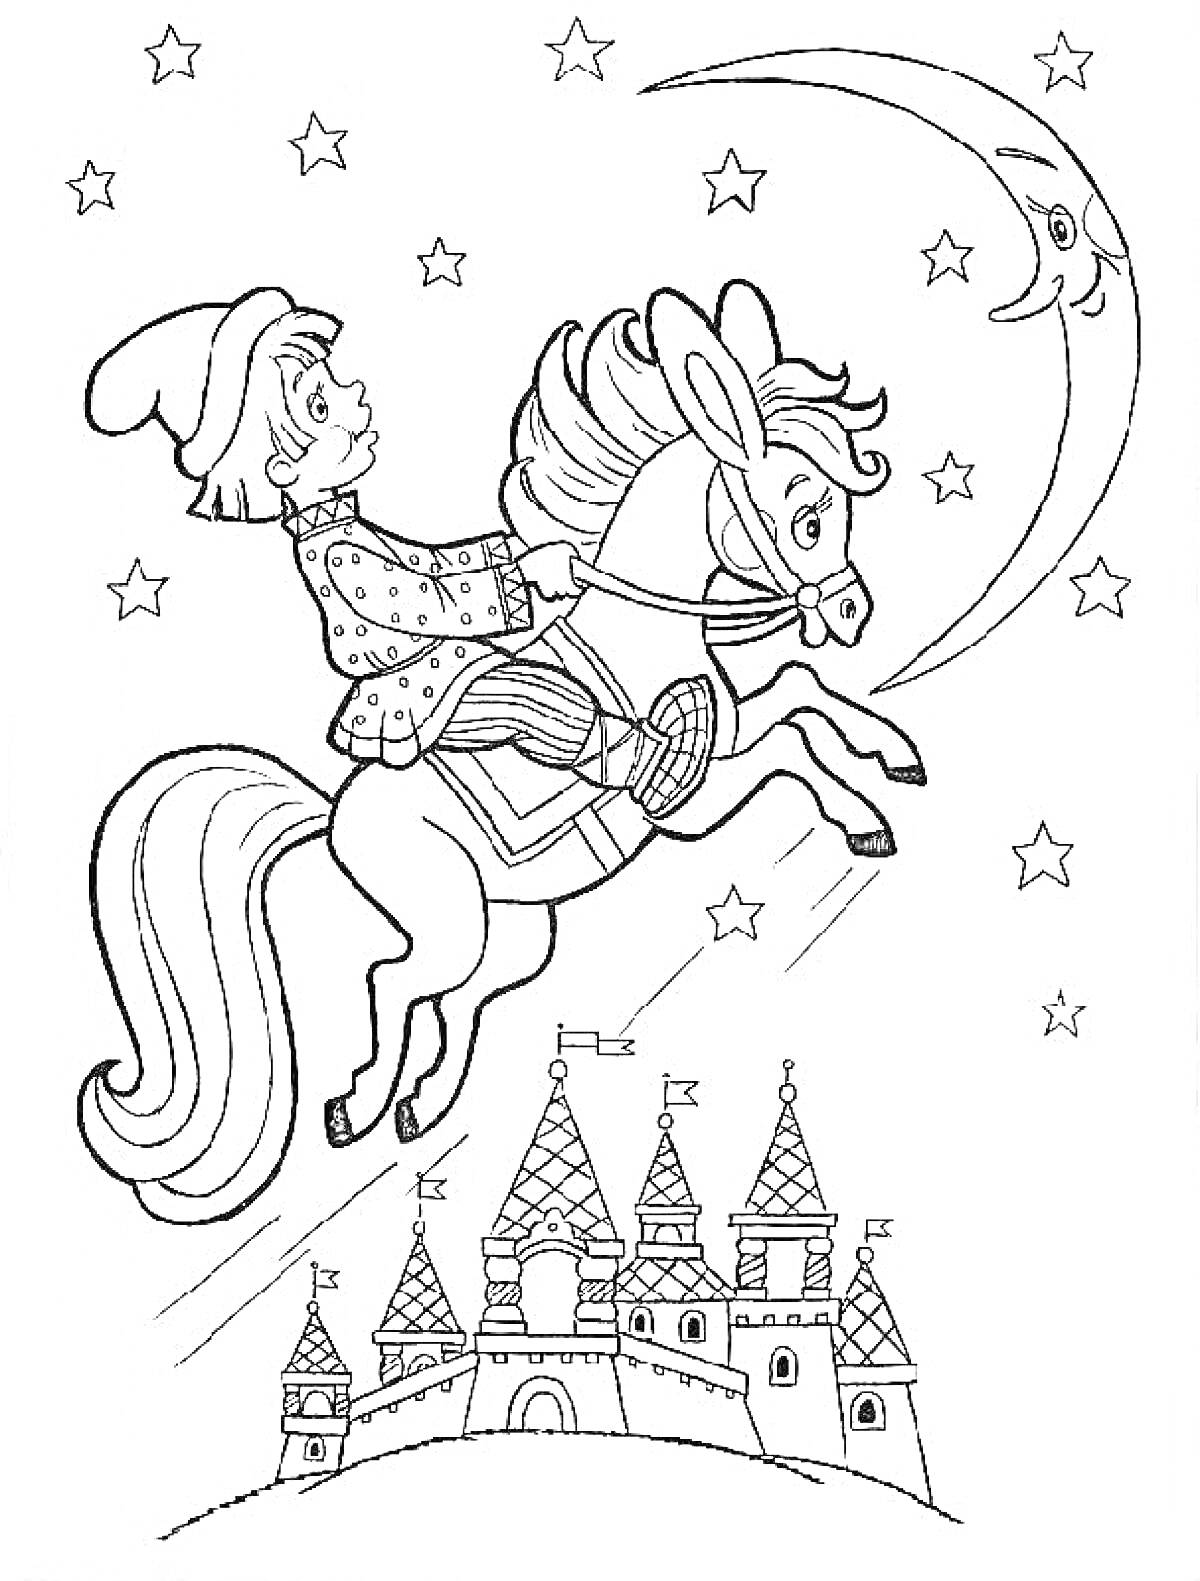 Раскраска Мальчик в шапке, скачущий на лошади через звезды и месяц, на фоне замка